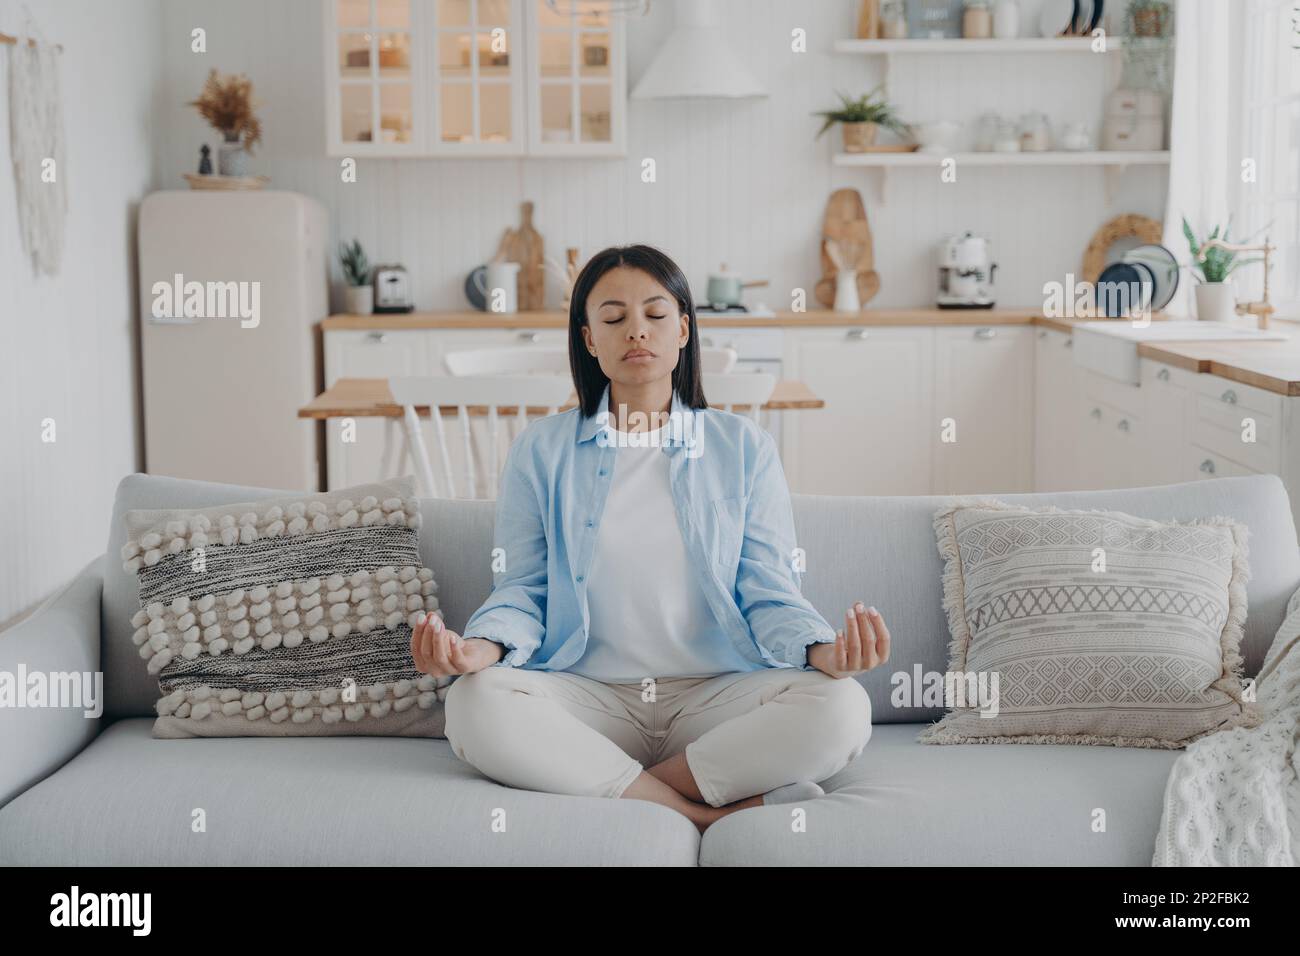 Eine ruhige Frau, die Yoga und Meditation praktiziert, die Hände in Mudra-Geste hält, zu Hause auf der gemütlichen Couch sitzt. Ruhige junge Frau, die sich auf dem Sofa entspannt. Wellness, Stockfoto